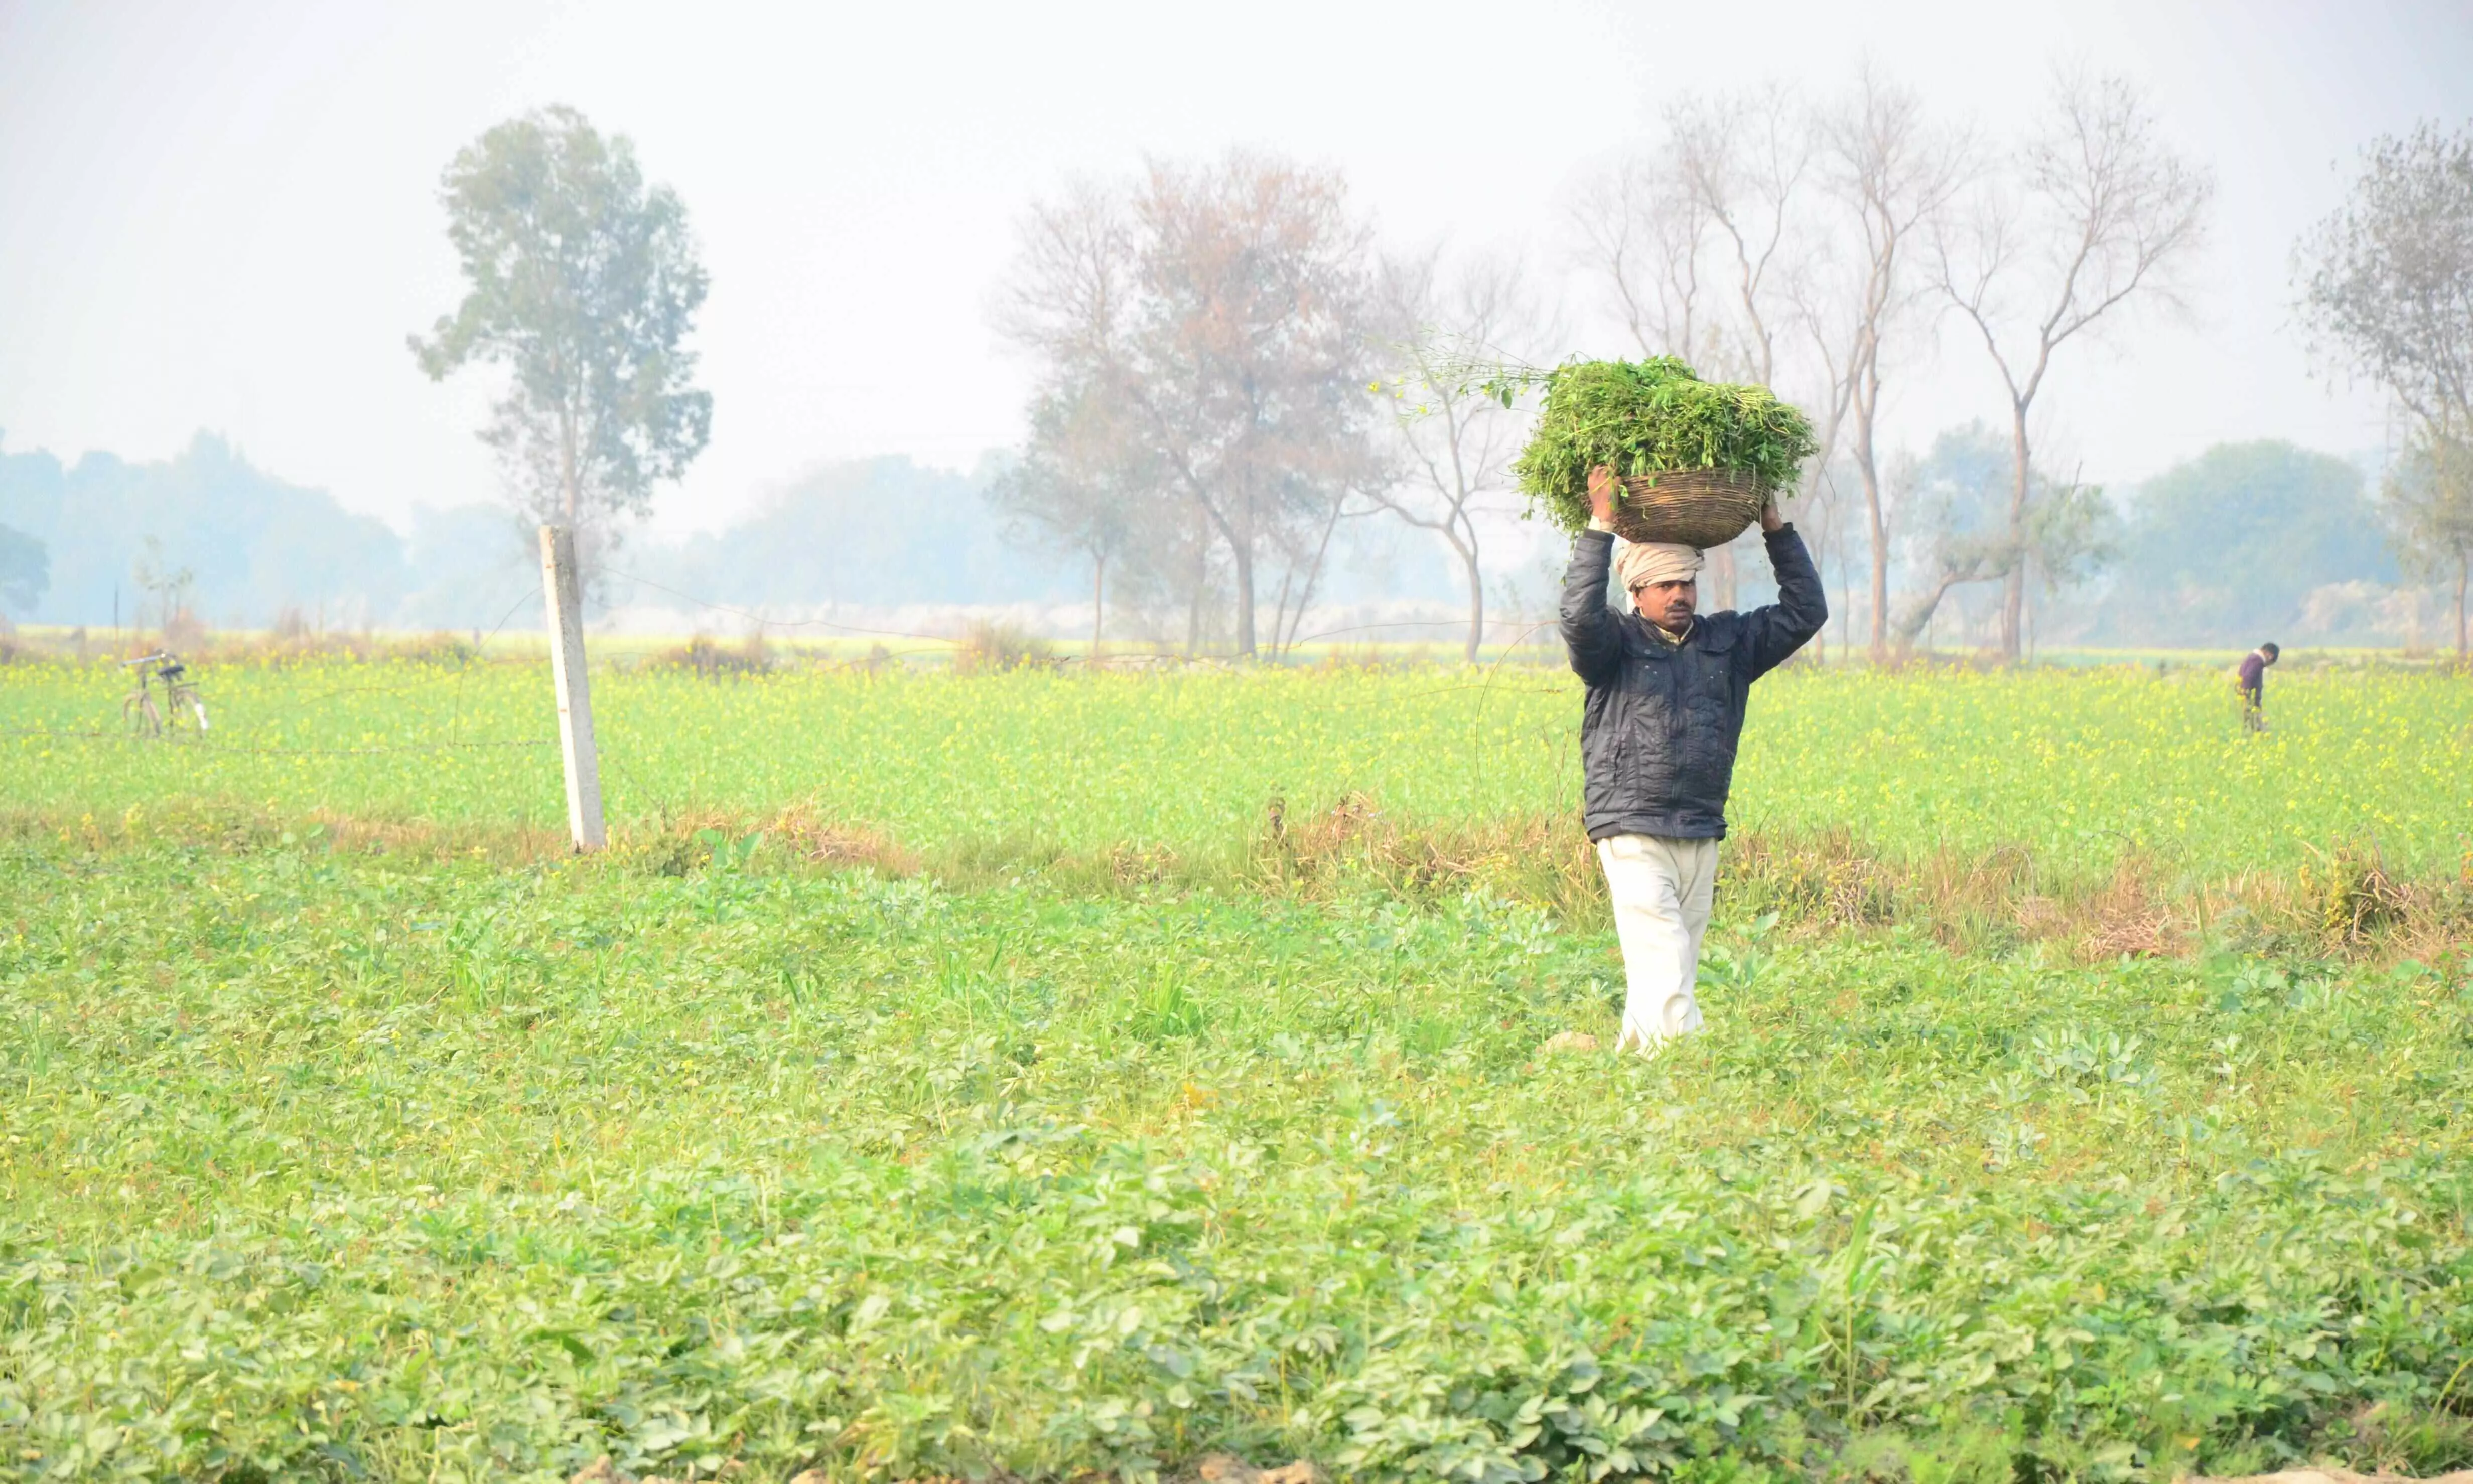 प्रगतिशील किसानों को सम्मानित करेगी हरियाणा सरकार, 15 जनवरी तक कर सकते हैं आवेदन